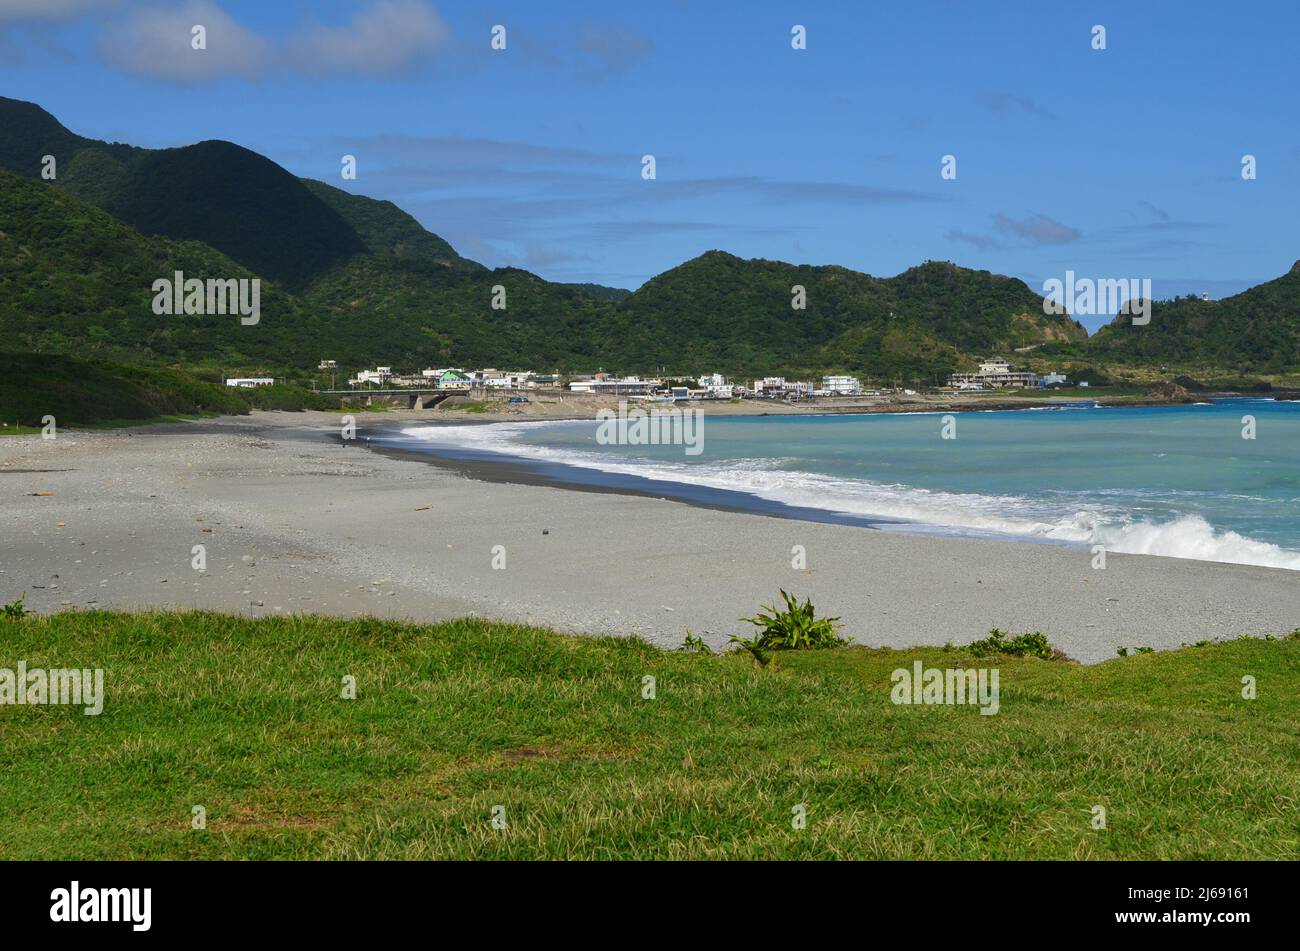 Una playa tranquila en la bahía de Dongquin, la isla de Lanyu (isla de orquídeas), Taiwán Foto de stock